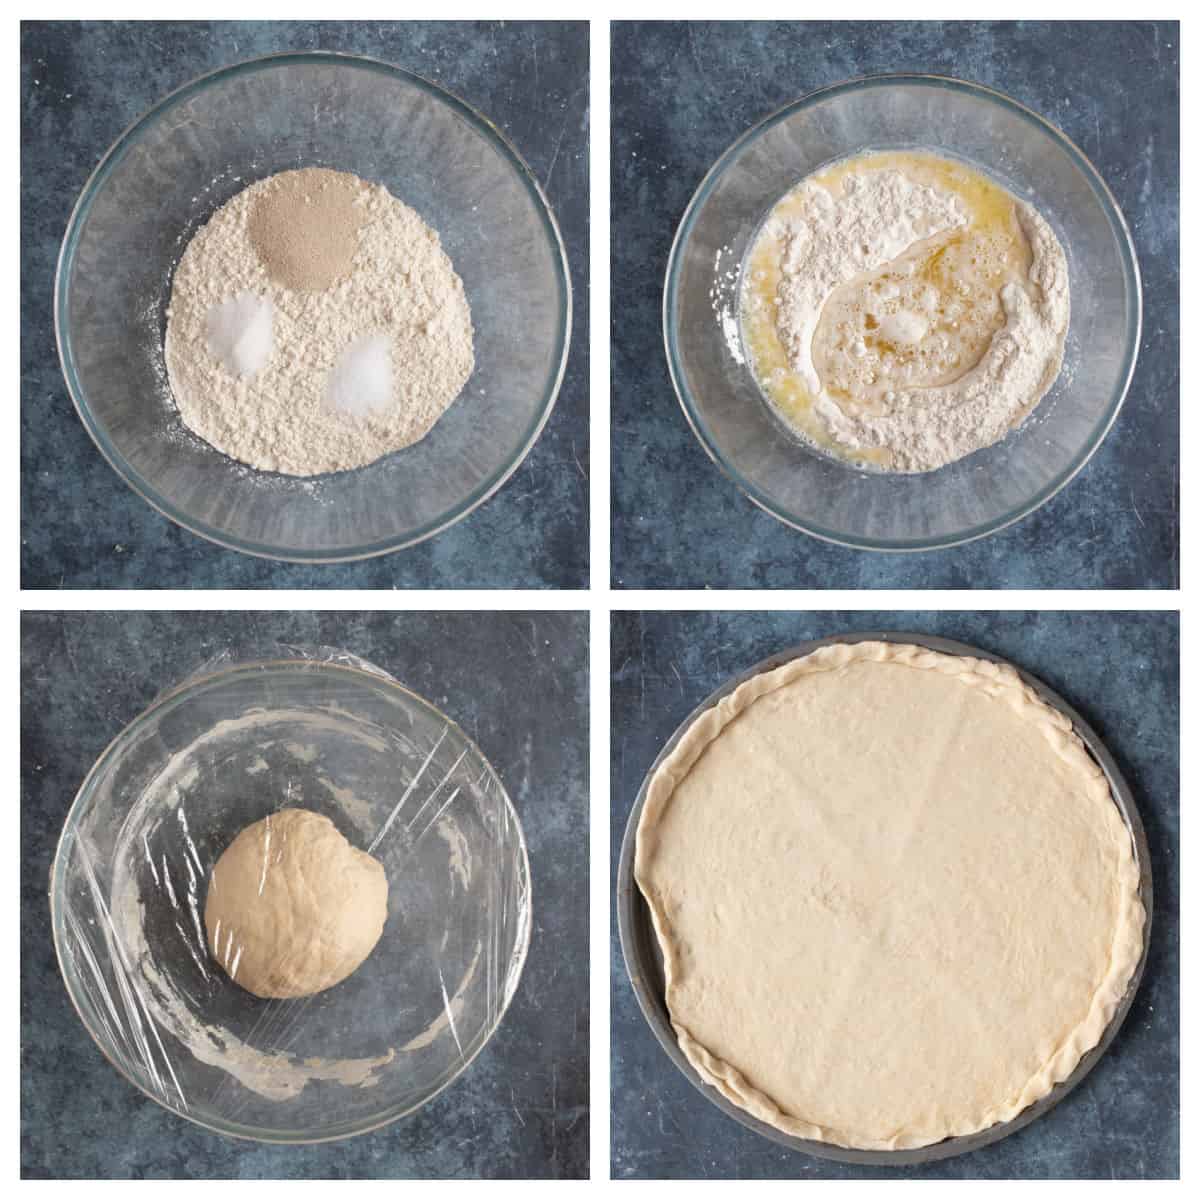 Plain flour pizza dough.